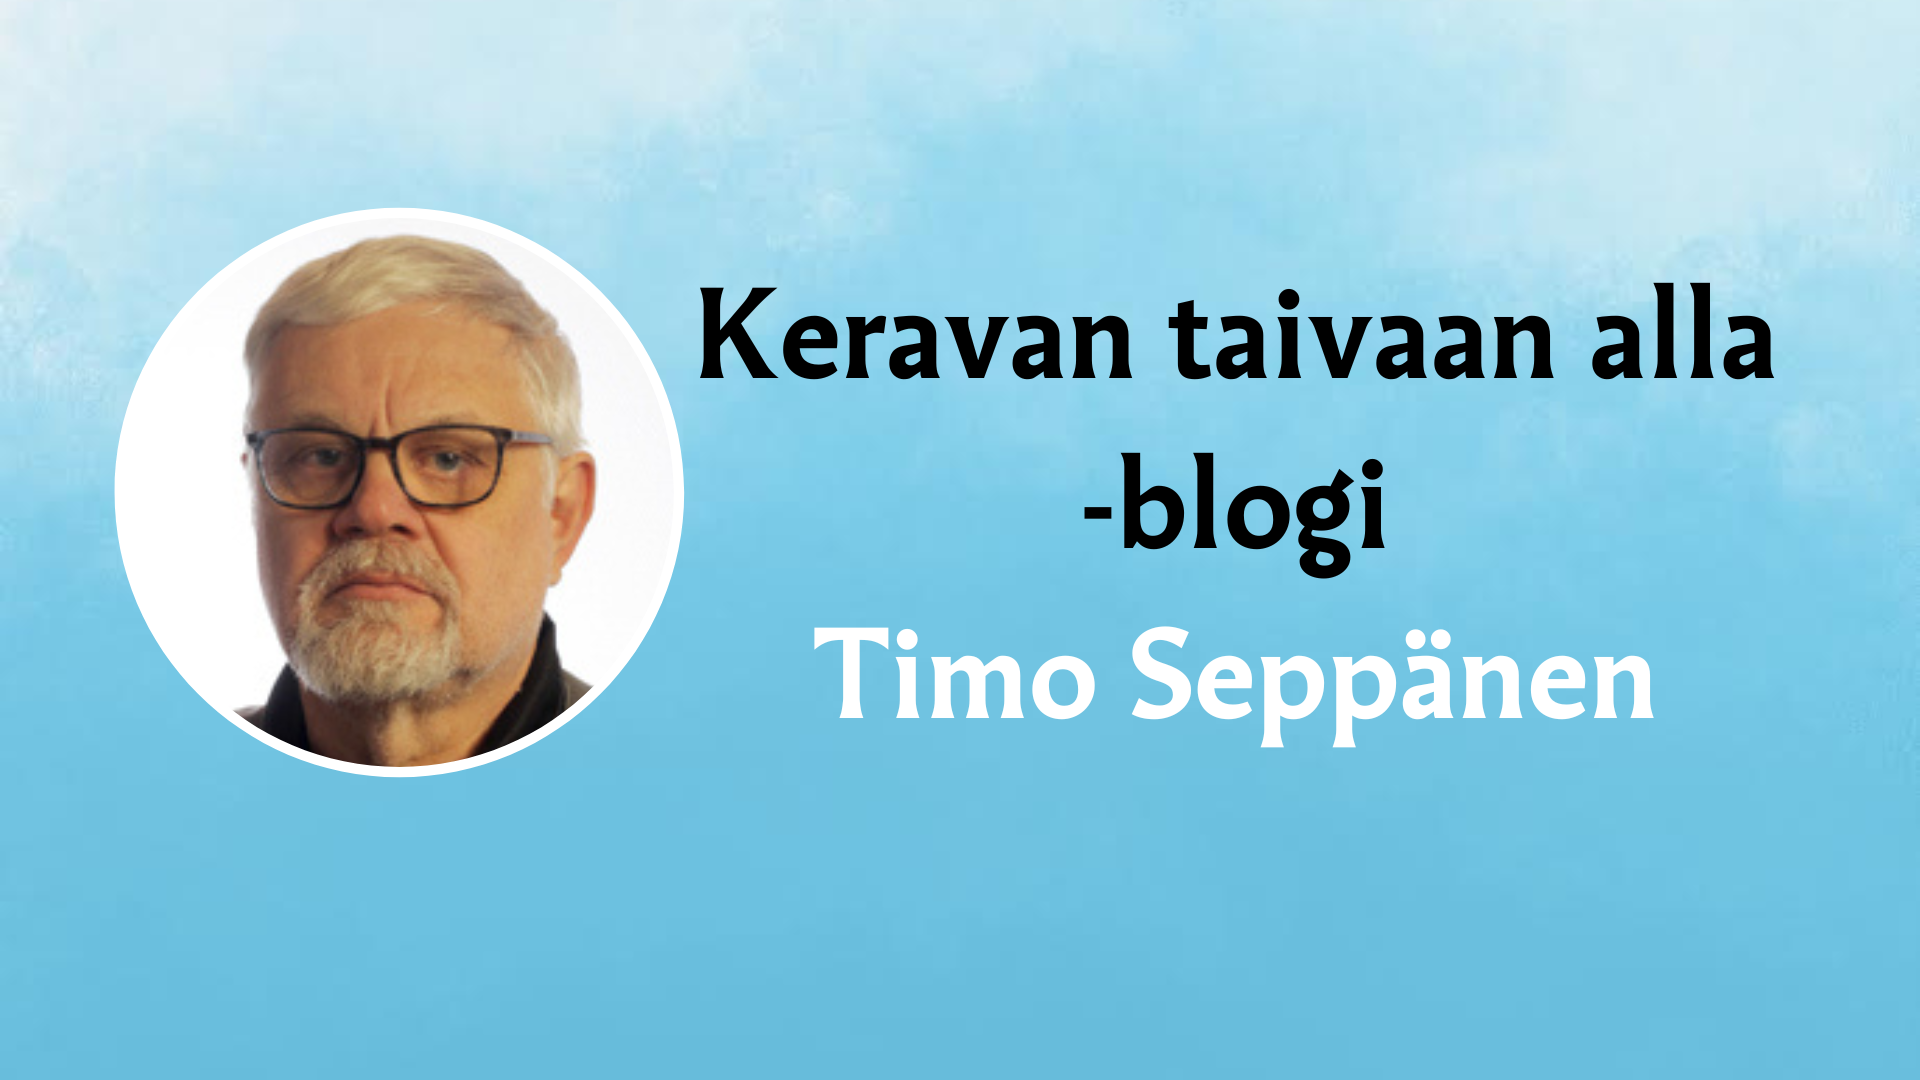 Timo Seppäsen nimi ja kuva sekä teksti Keravan taivaan alla.